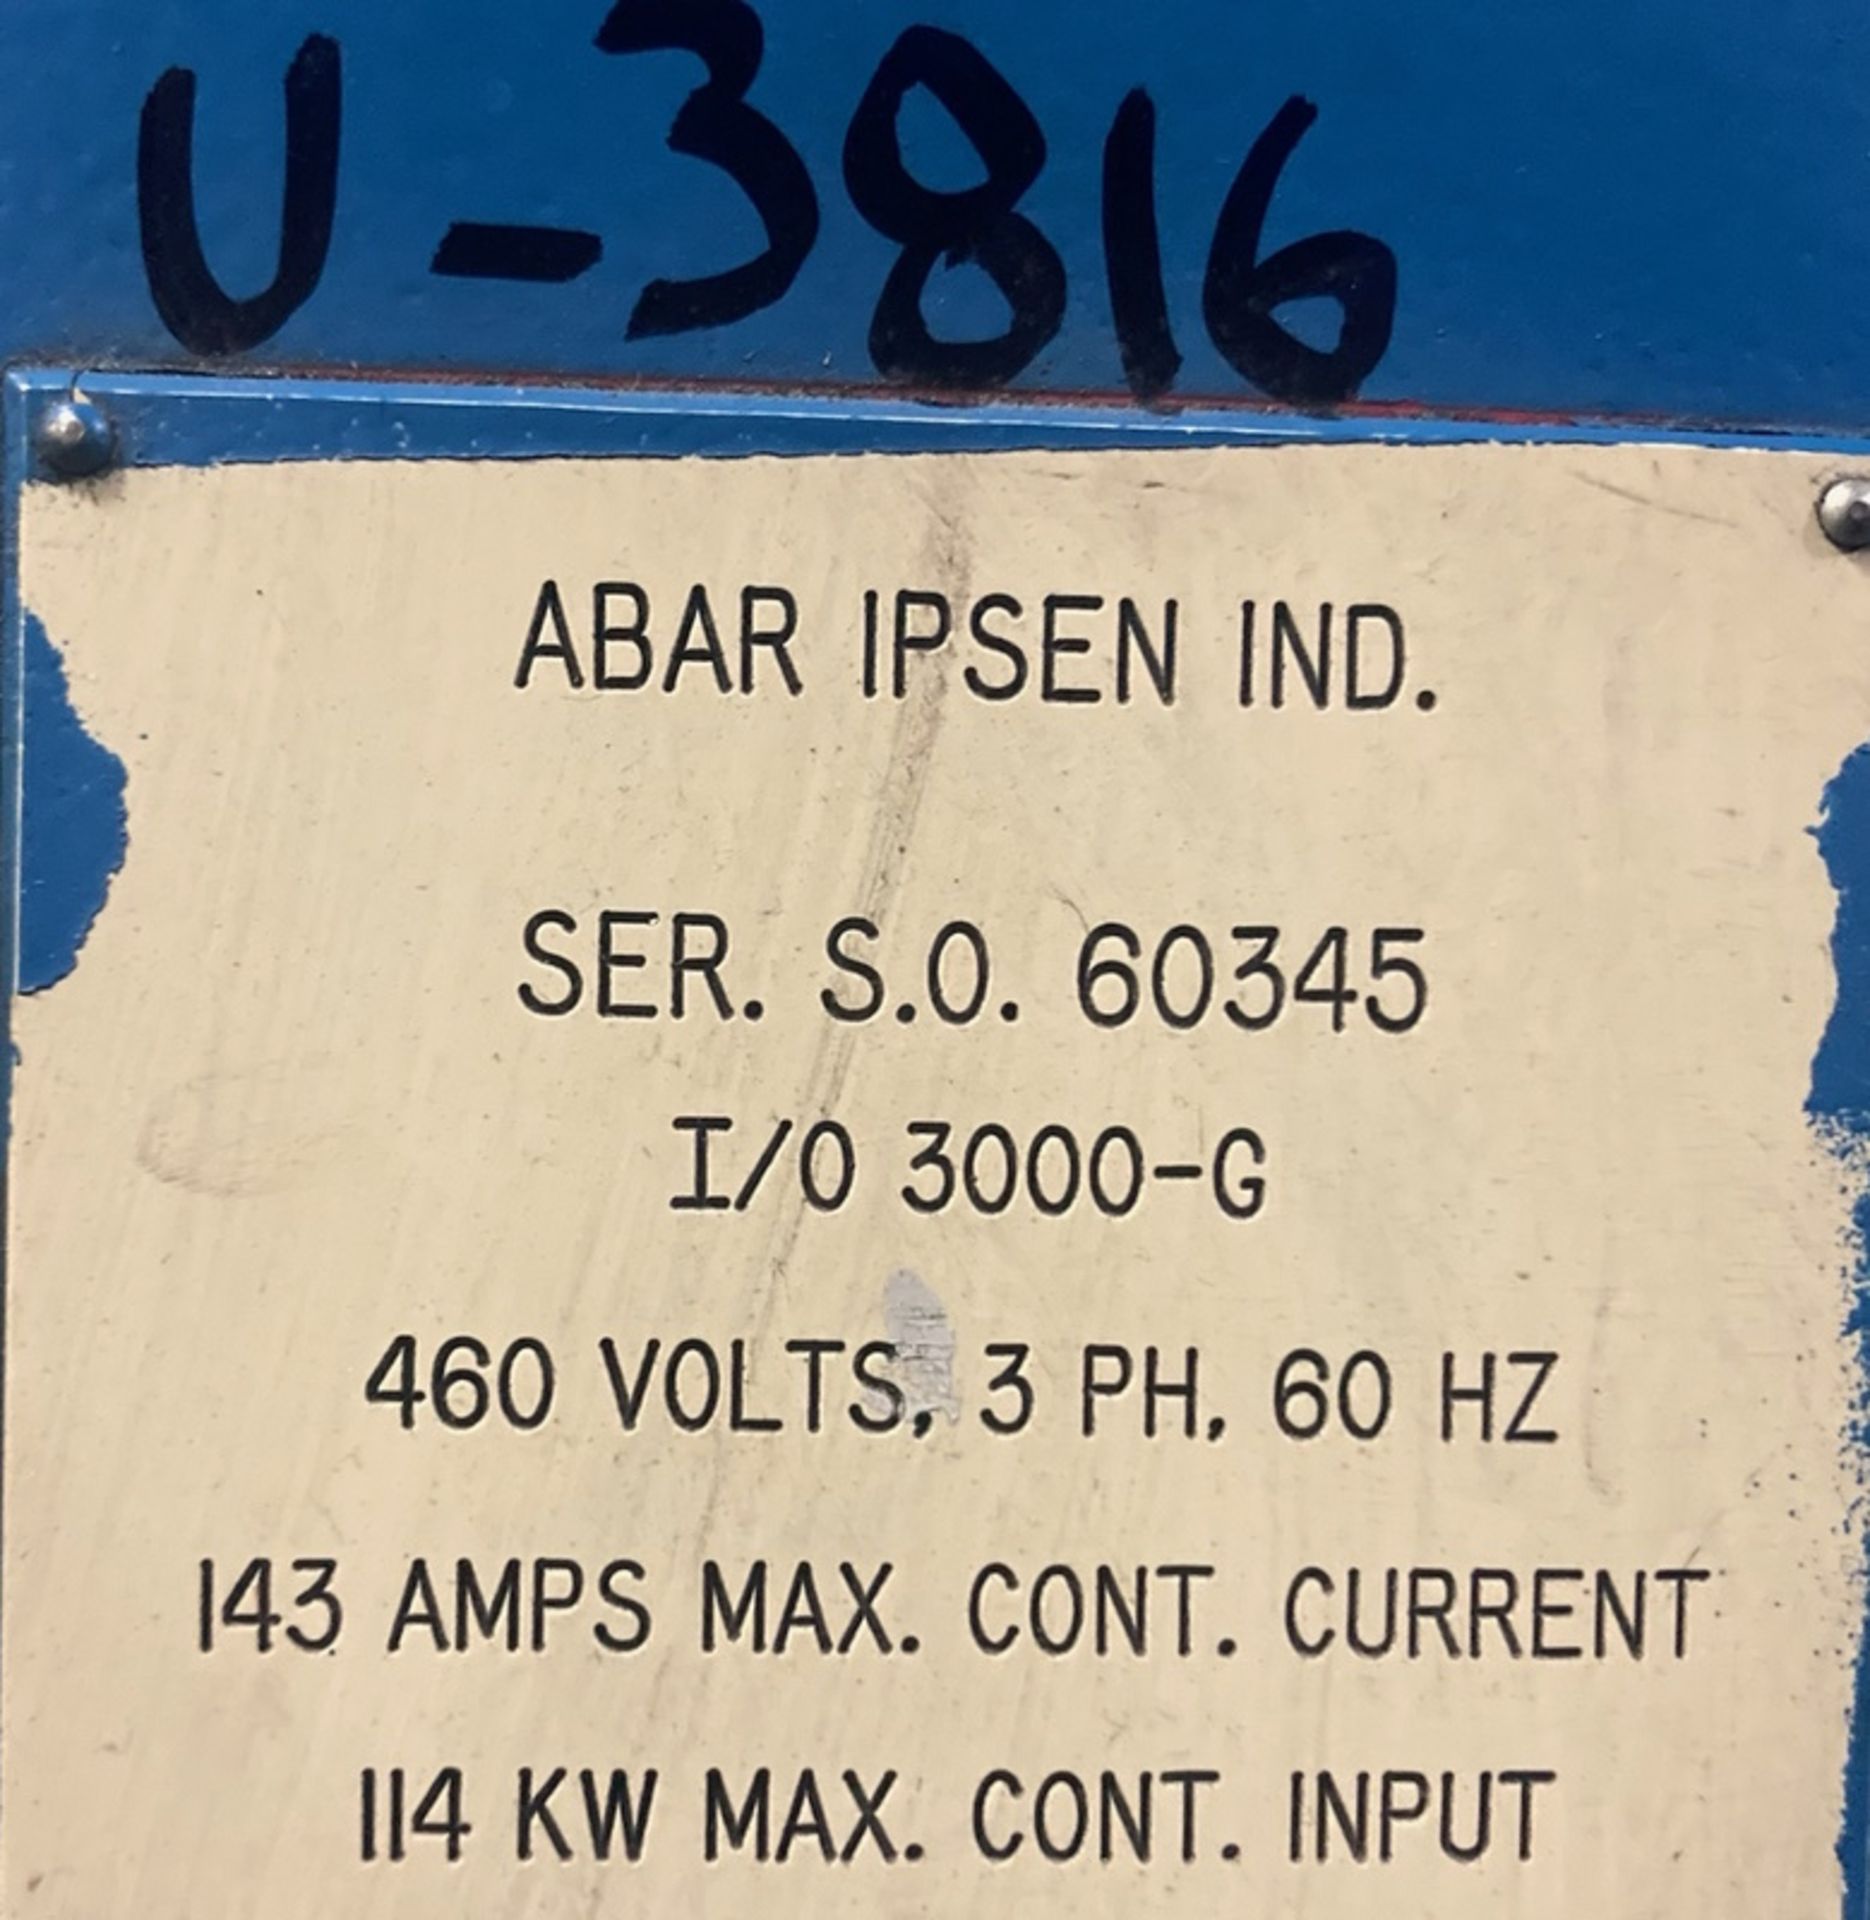 Abar Ipsen I/O-3000-G IQ Furnace - Image 2 of 7